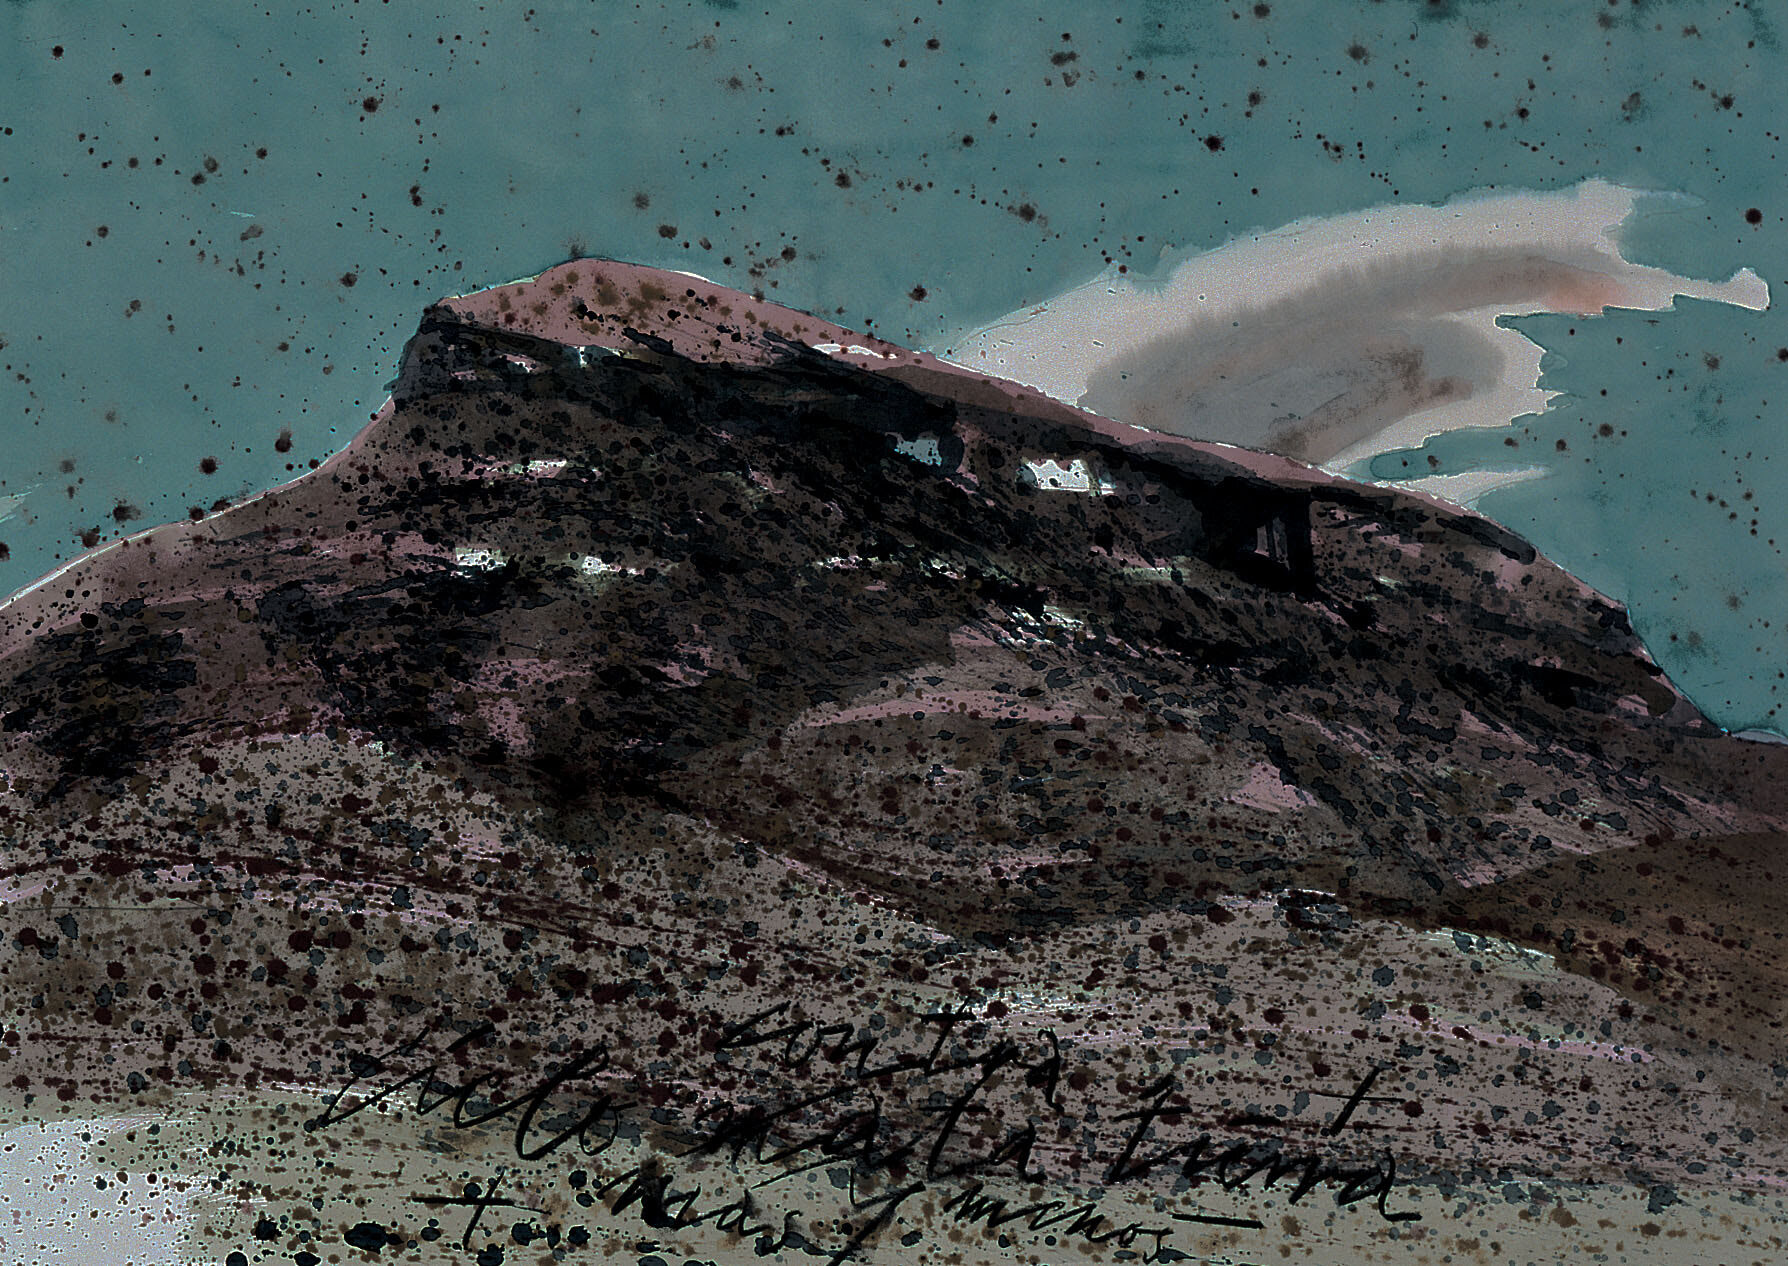 la montaña sesga y la nube sesga (Himmel tötet Erde), 2000